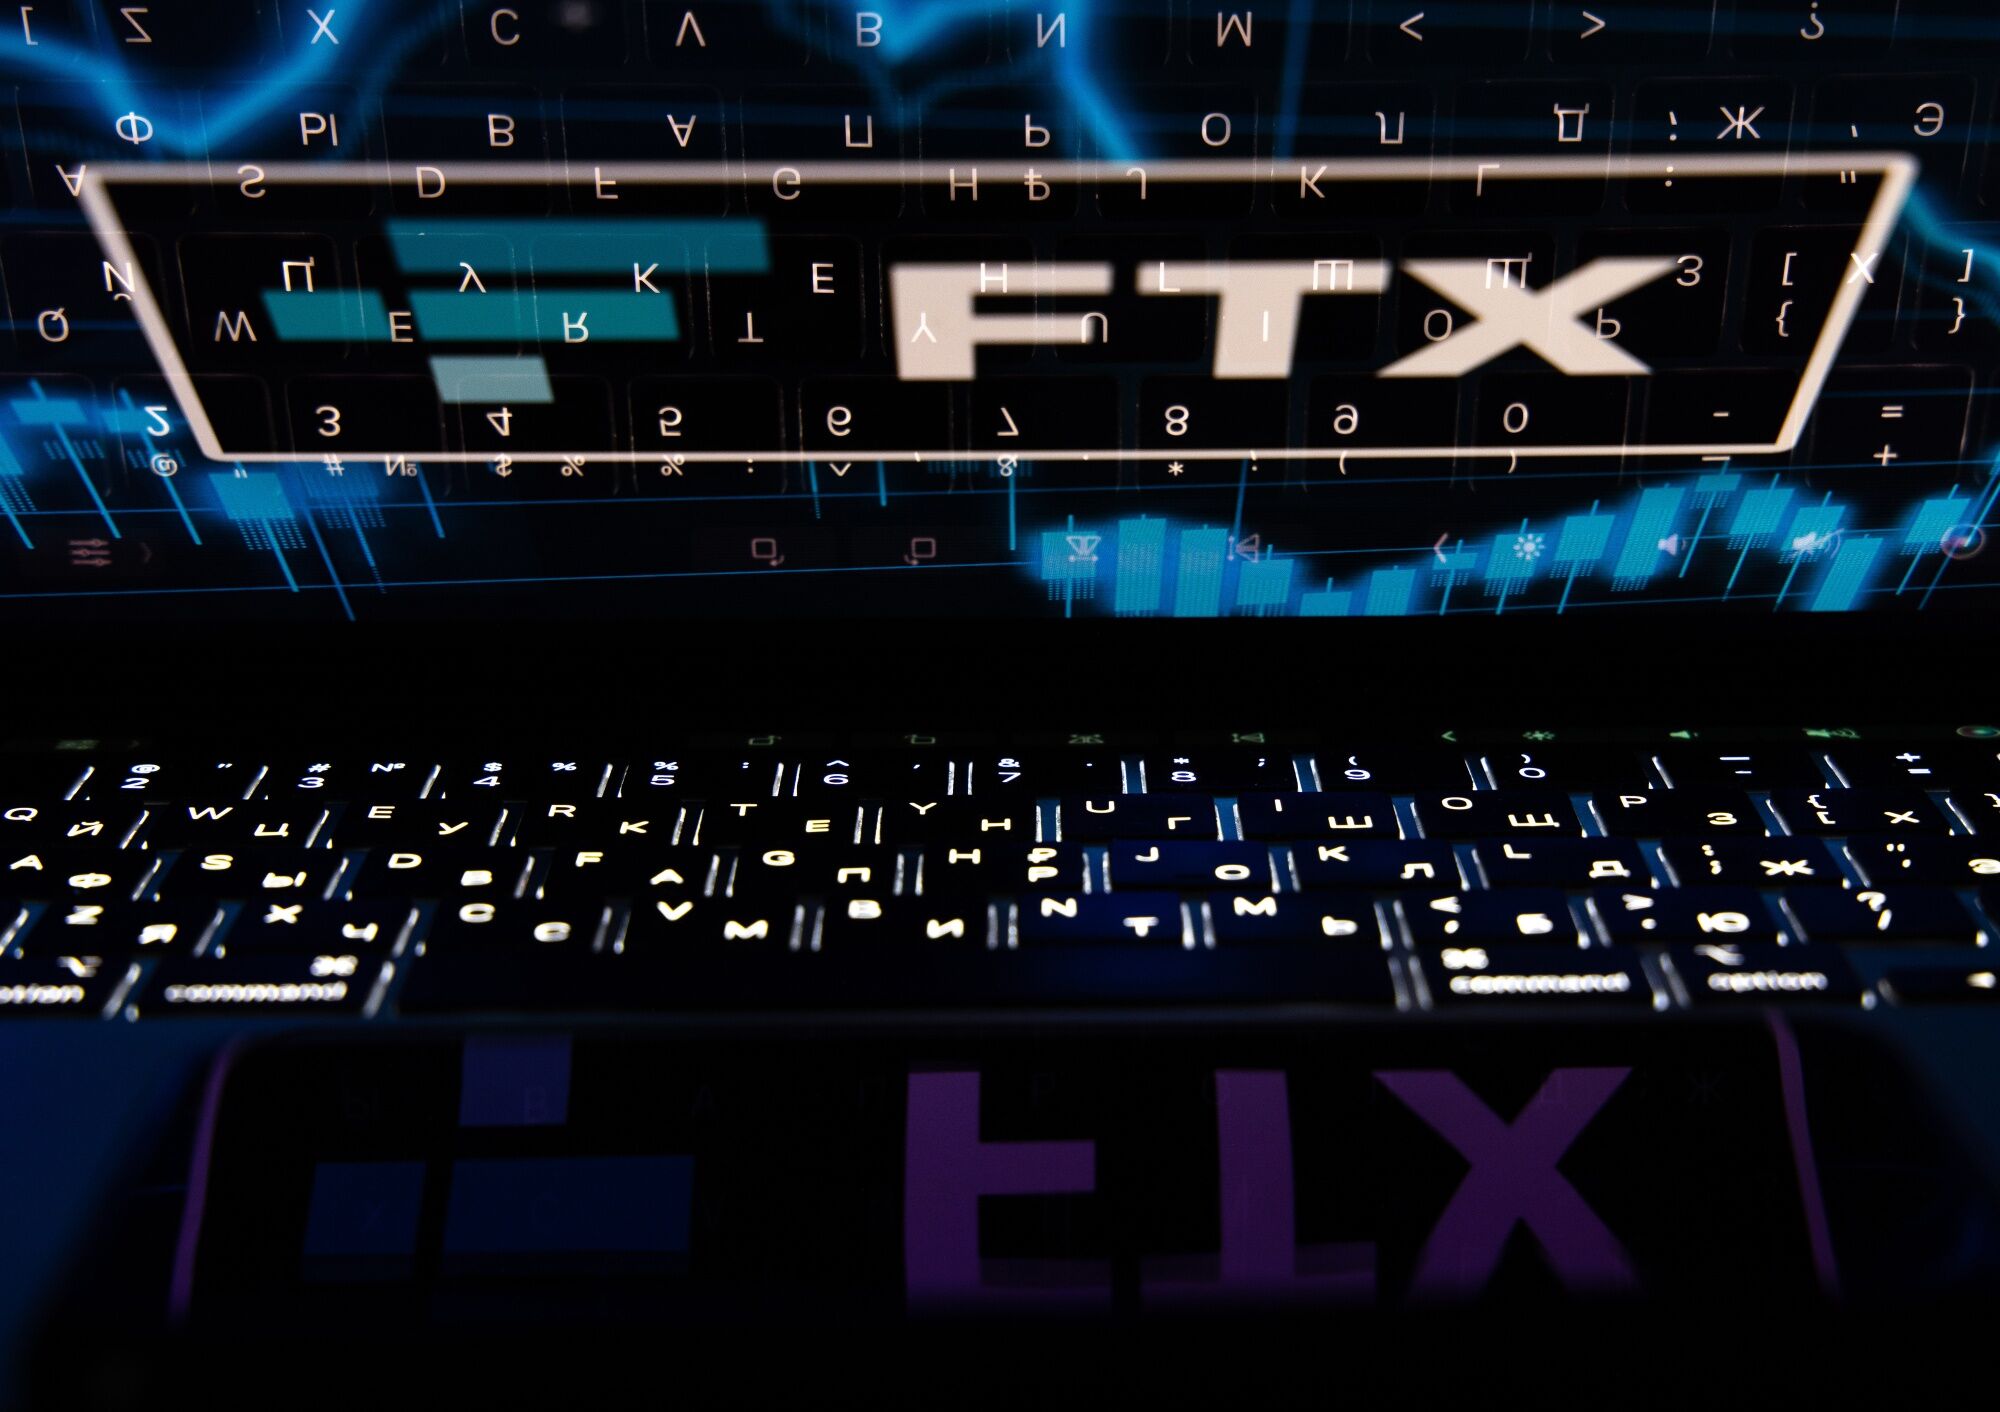 Crypto exchange FTX's meltdown has impact across multiple sports - The  Boston Globe